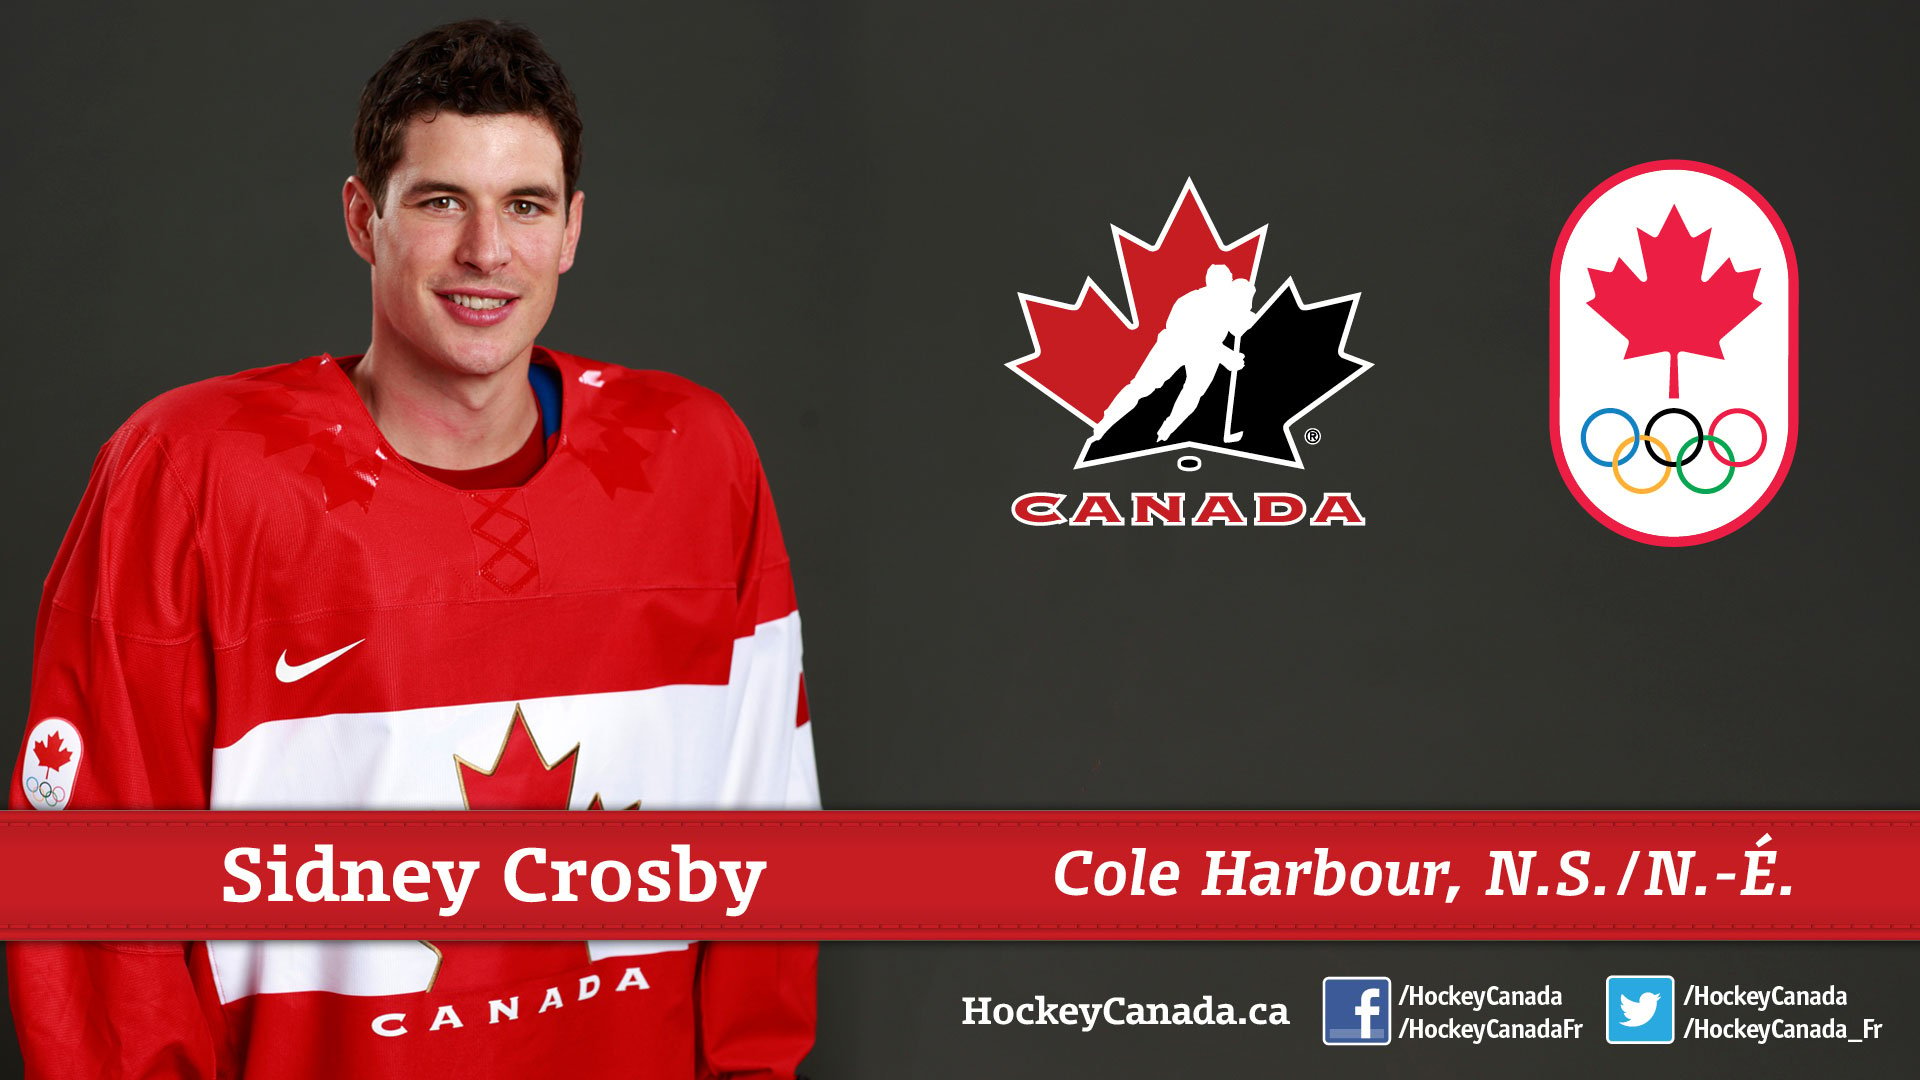 2014 Sochi Olympics Team Canada Wallpaper featuring Sidney Crosby